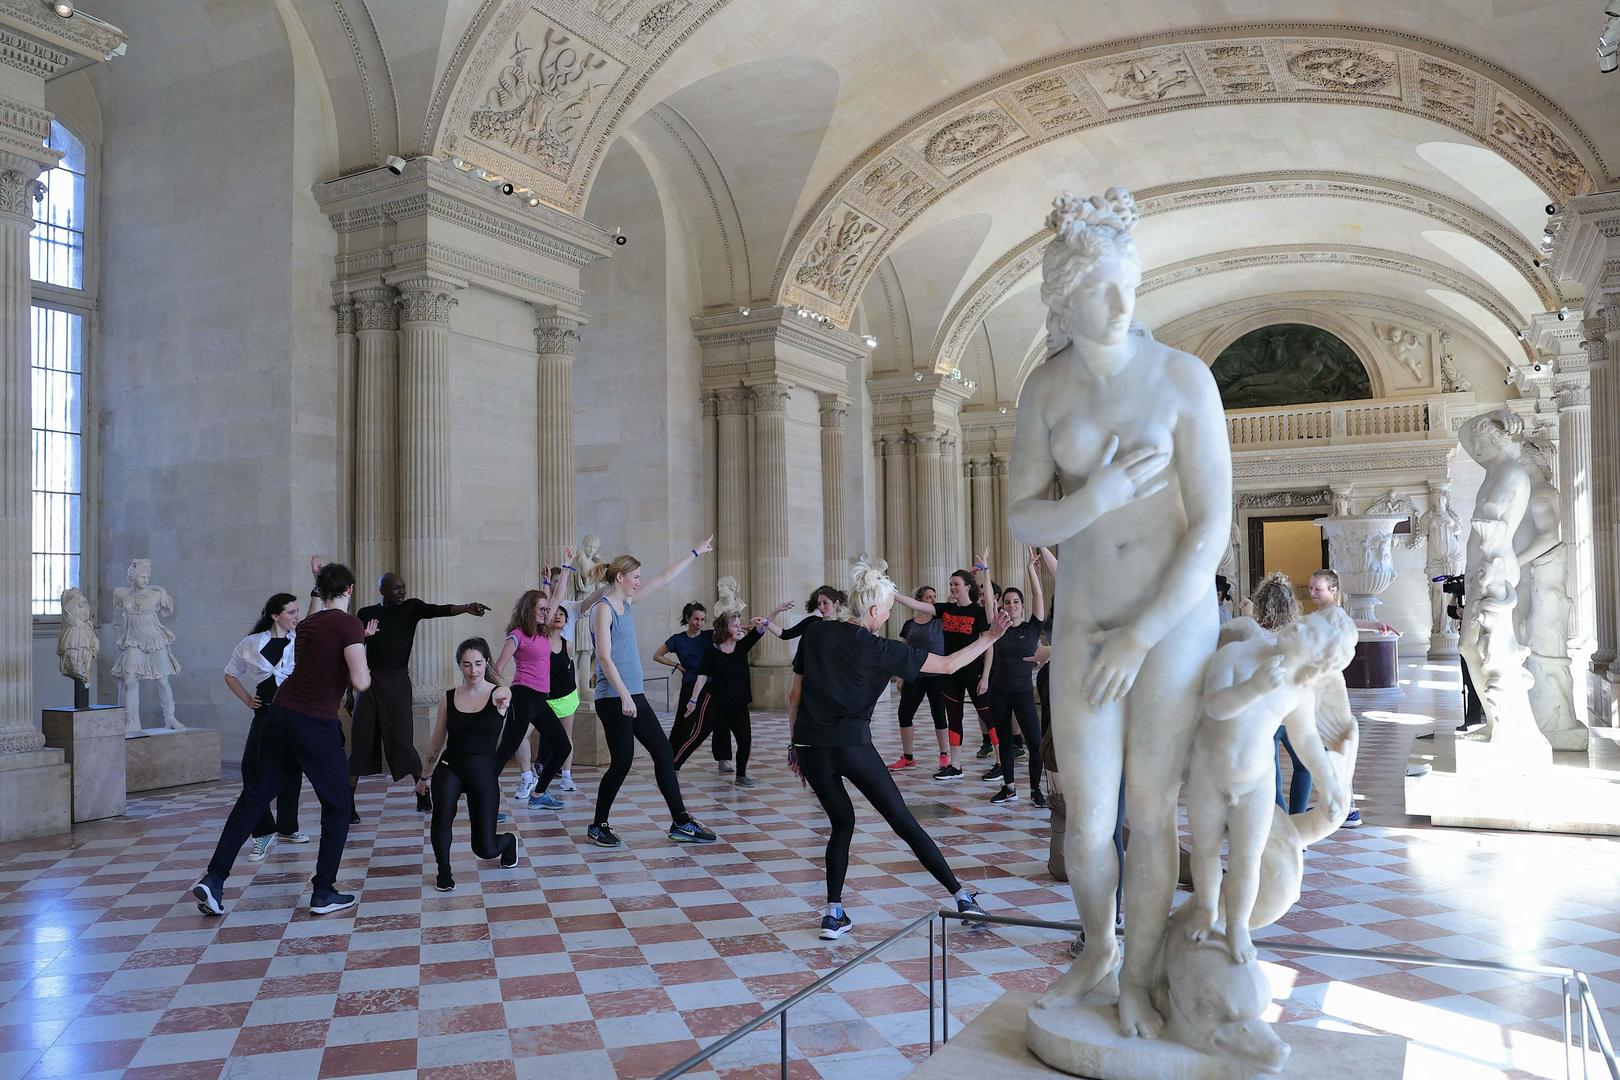 ▲在卢浮宫的女像柱厅，人们正在排练“运动之旅”。此次彩排是卢浮宫展览“奥林匹克精神”的一部分